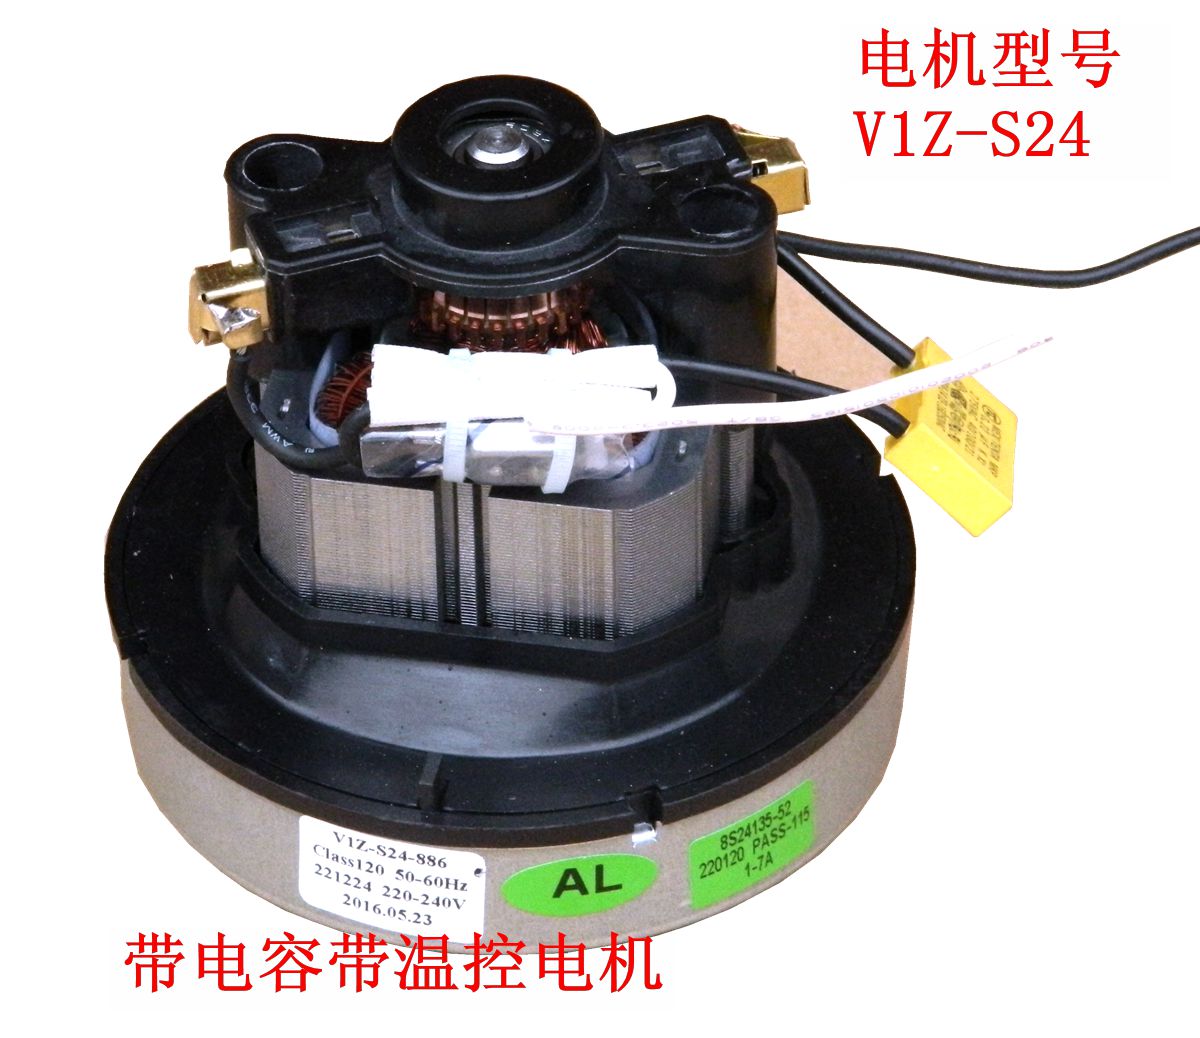 1200瓦V1Z-S24-L吸尘器电机 V1J-DA22-L吸尘器马达配件德尔玛折扣优惠信息